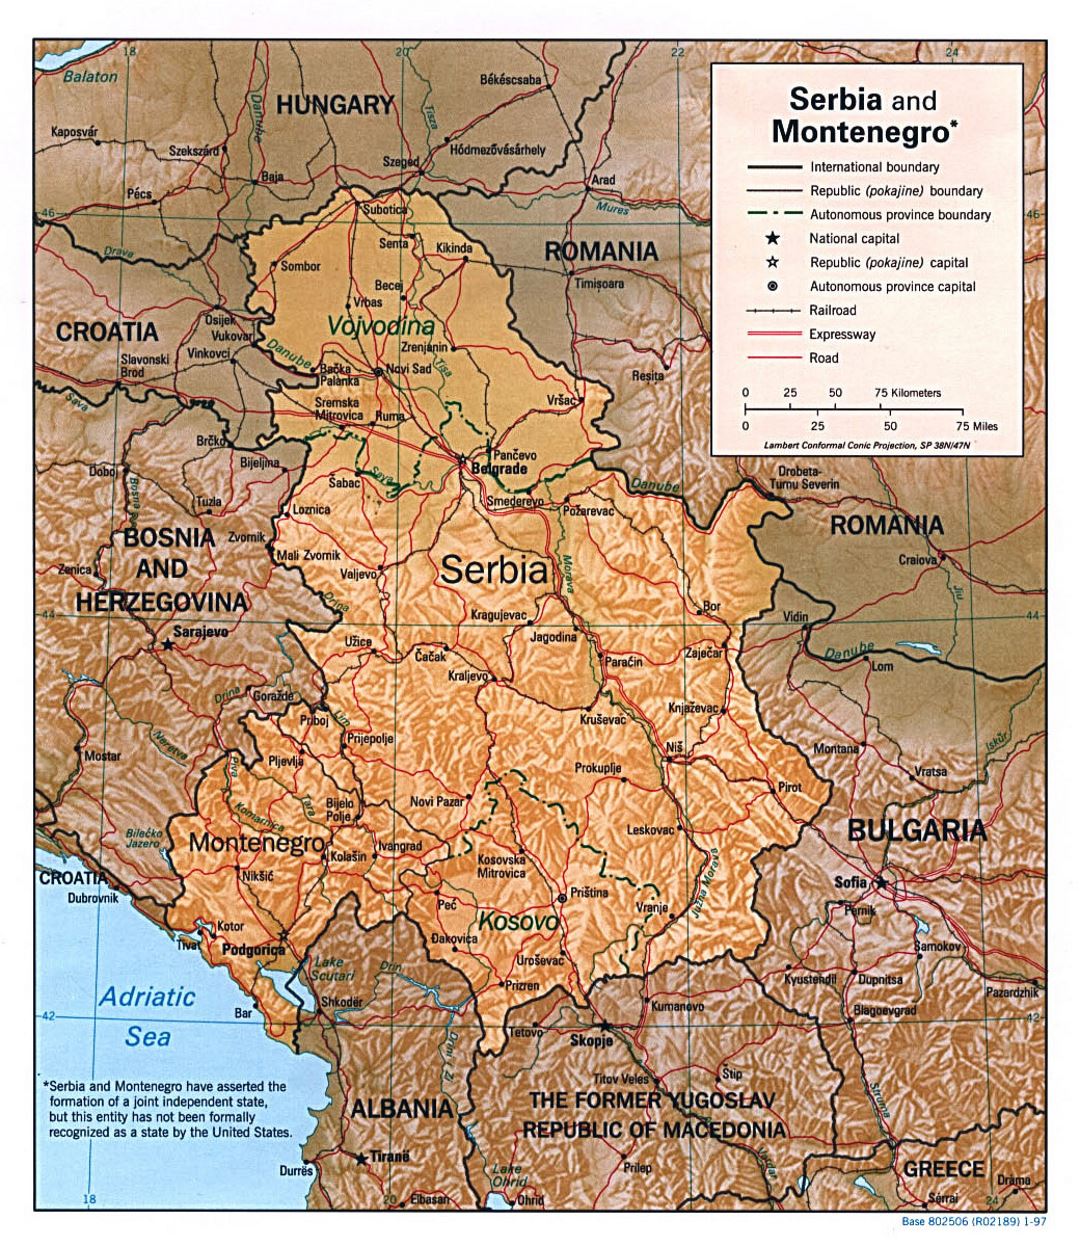 Detallado mapa político de Serbia y Montenegro con alivio, carreteras, vías férreas y principales ciudades - 1997